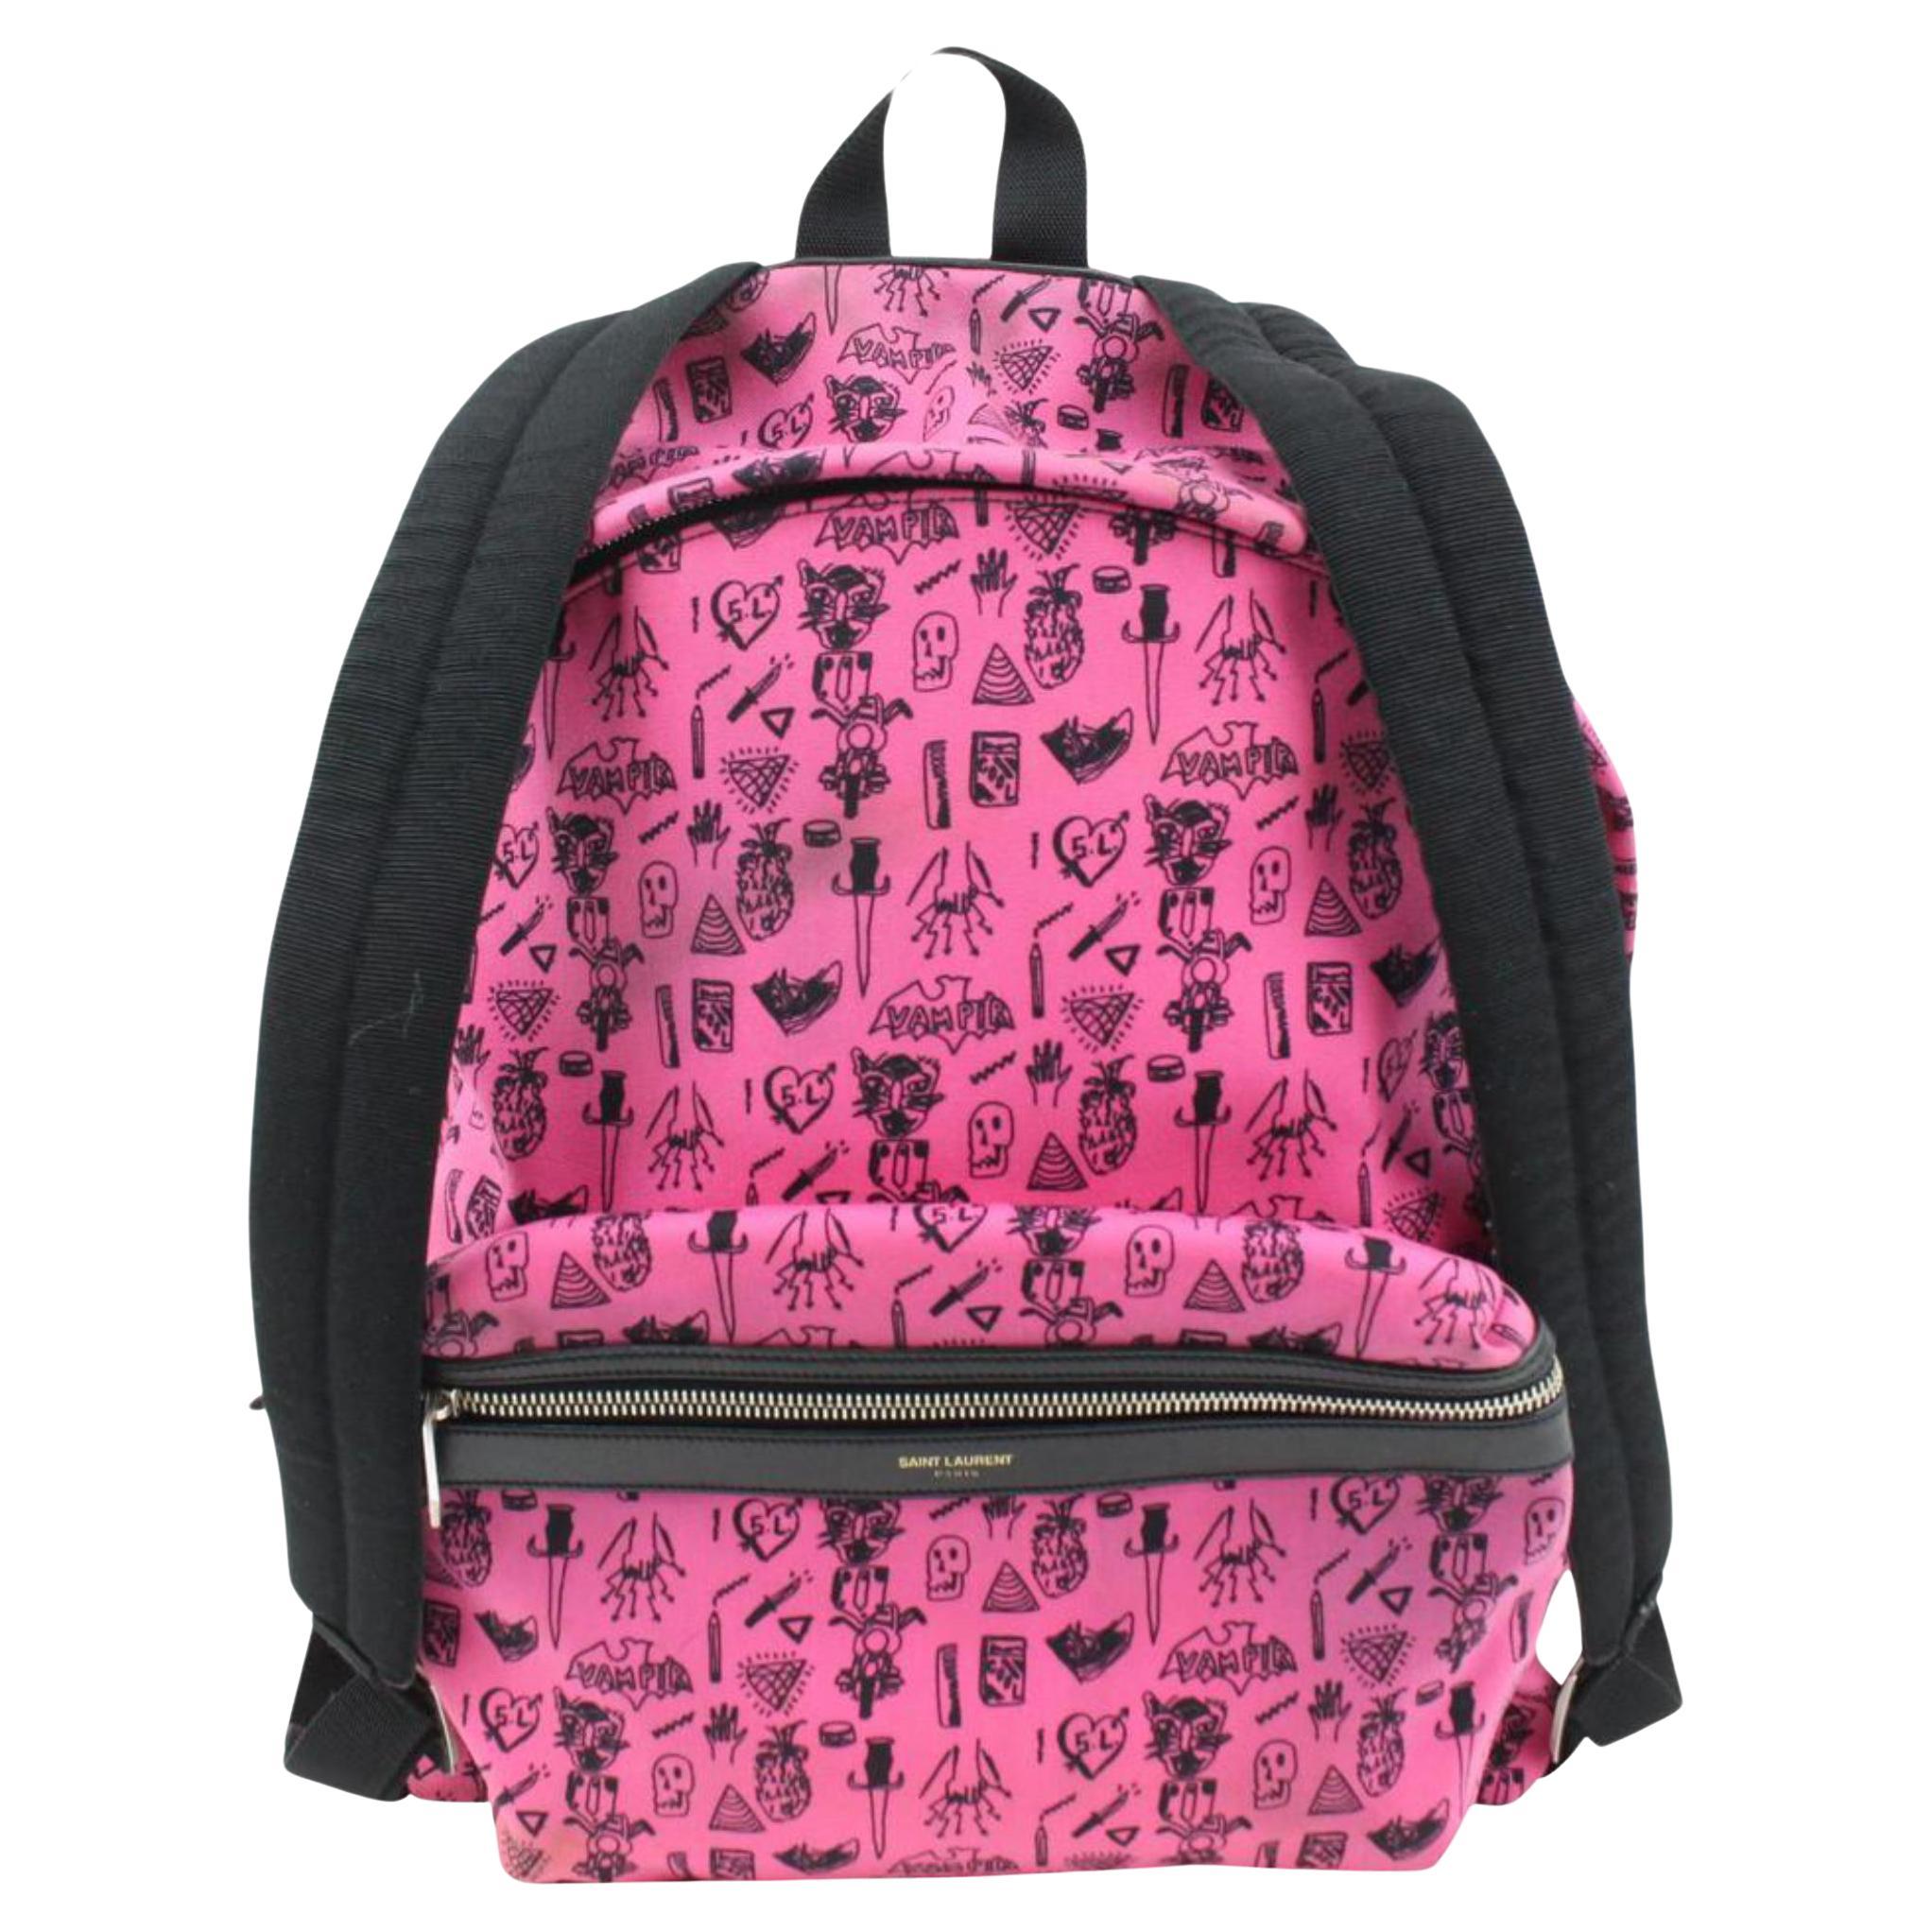 Saint Laurent Hot Pink Doodle Print City Backpack 54ys23s